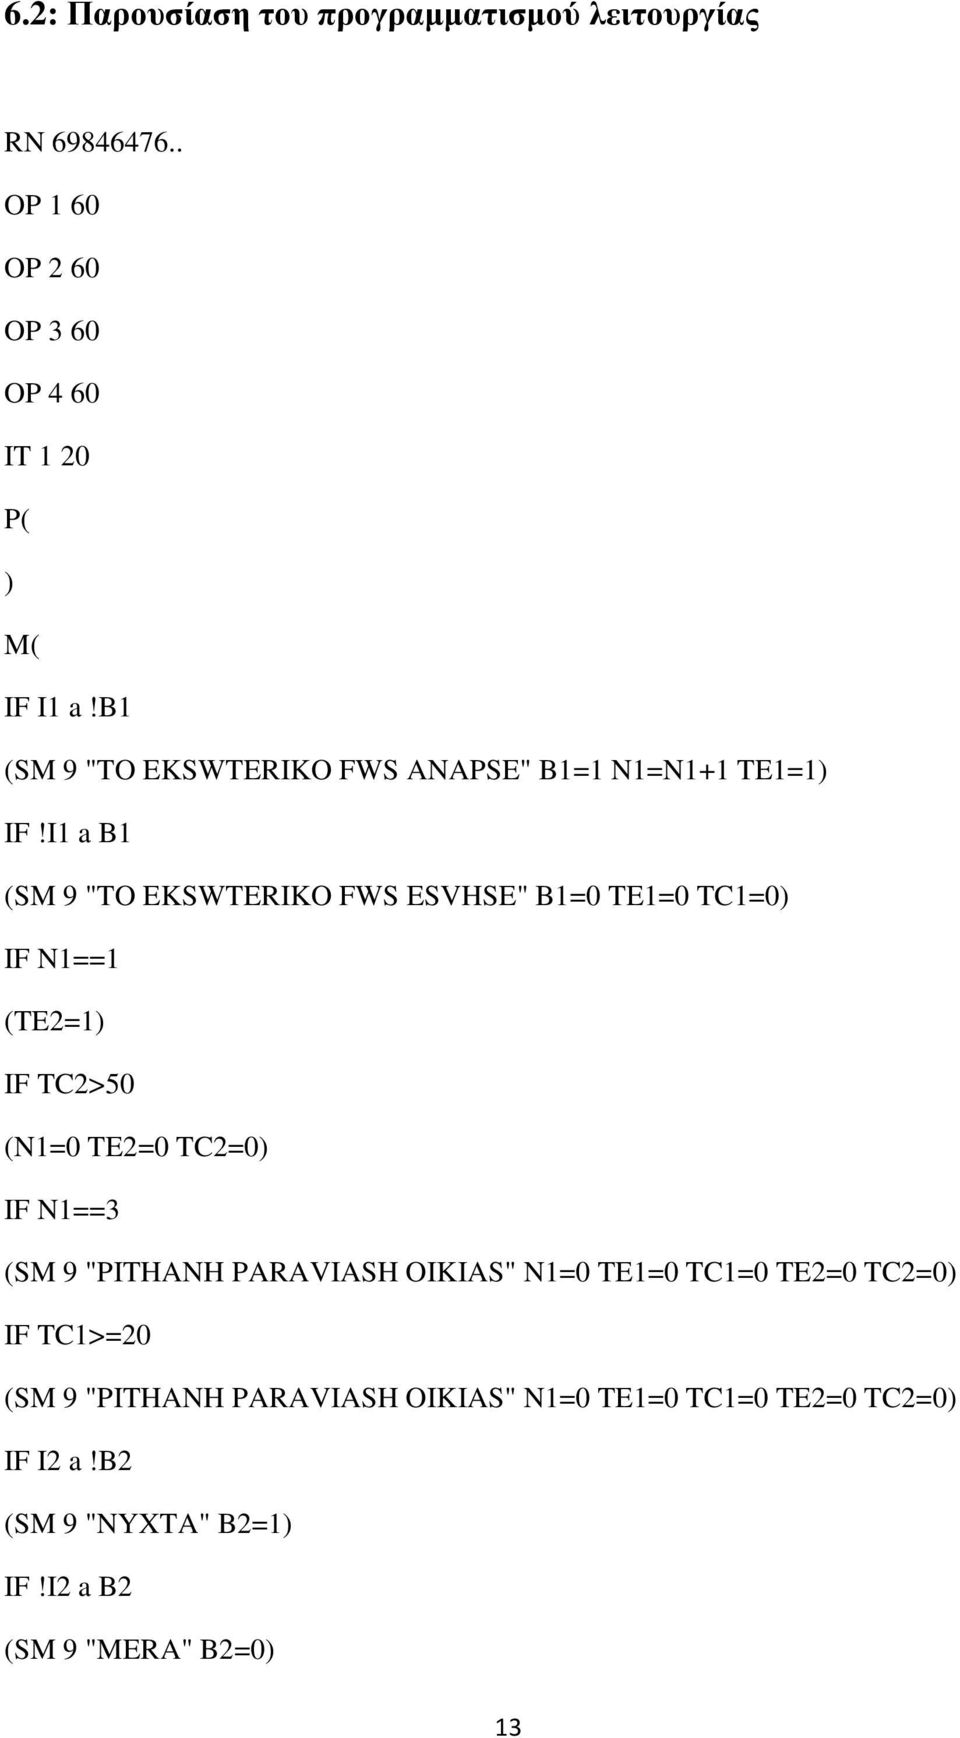 I1 a B1 (SM 9 "TO EKSWTERIKO FWS ESVHSE" B1=0 TE1=0 TC1=0) IF N1==1 (TE2=1) IF TC2>50 (N1=0 TE2=0 TC2=0) IF N1==3 (SM 9